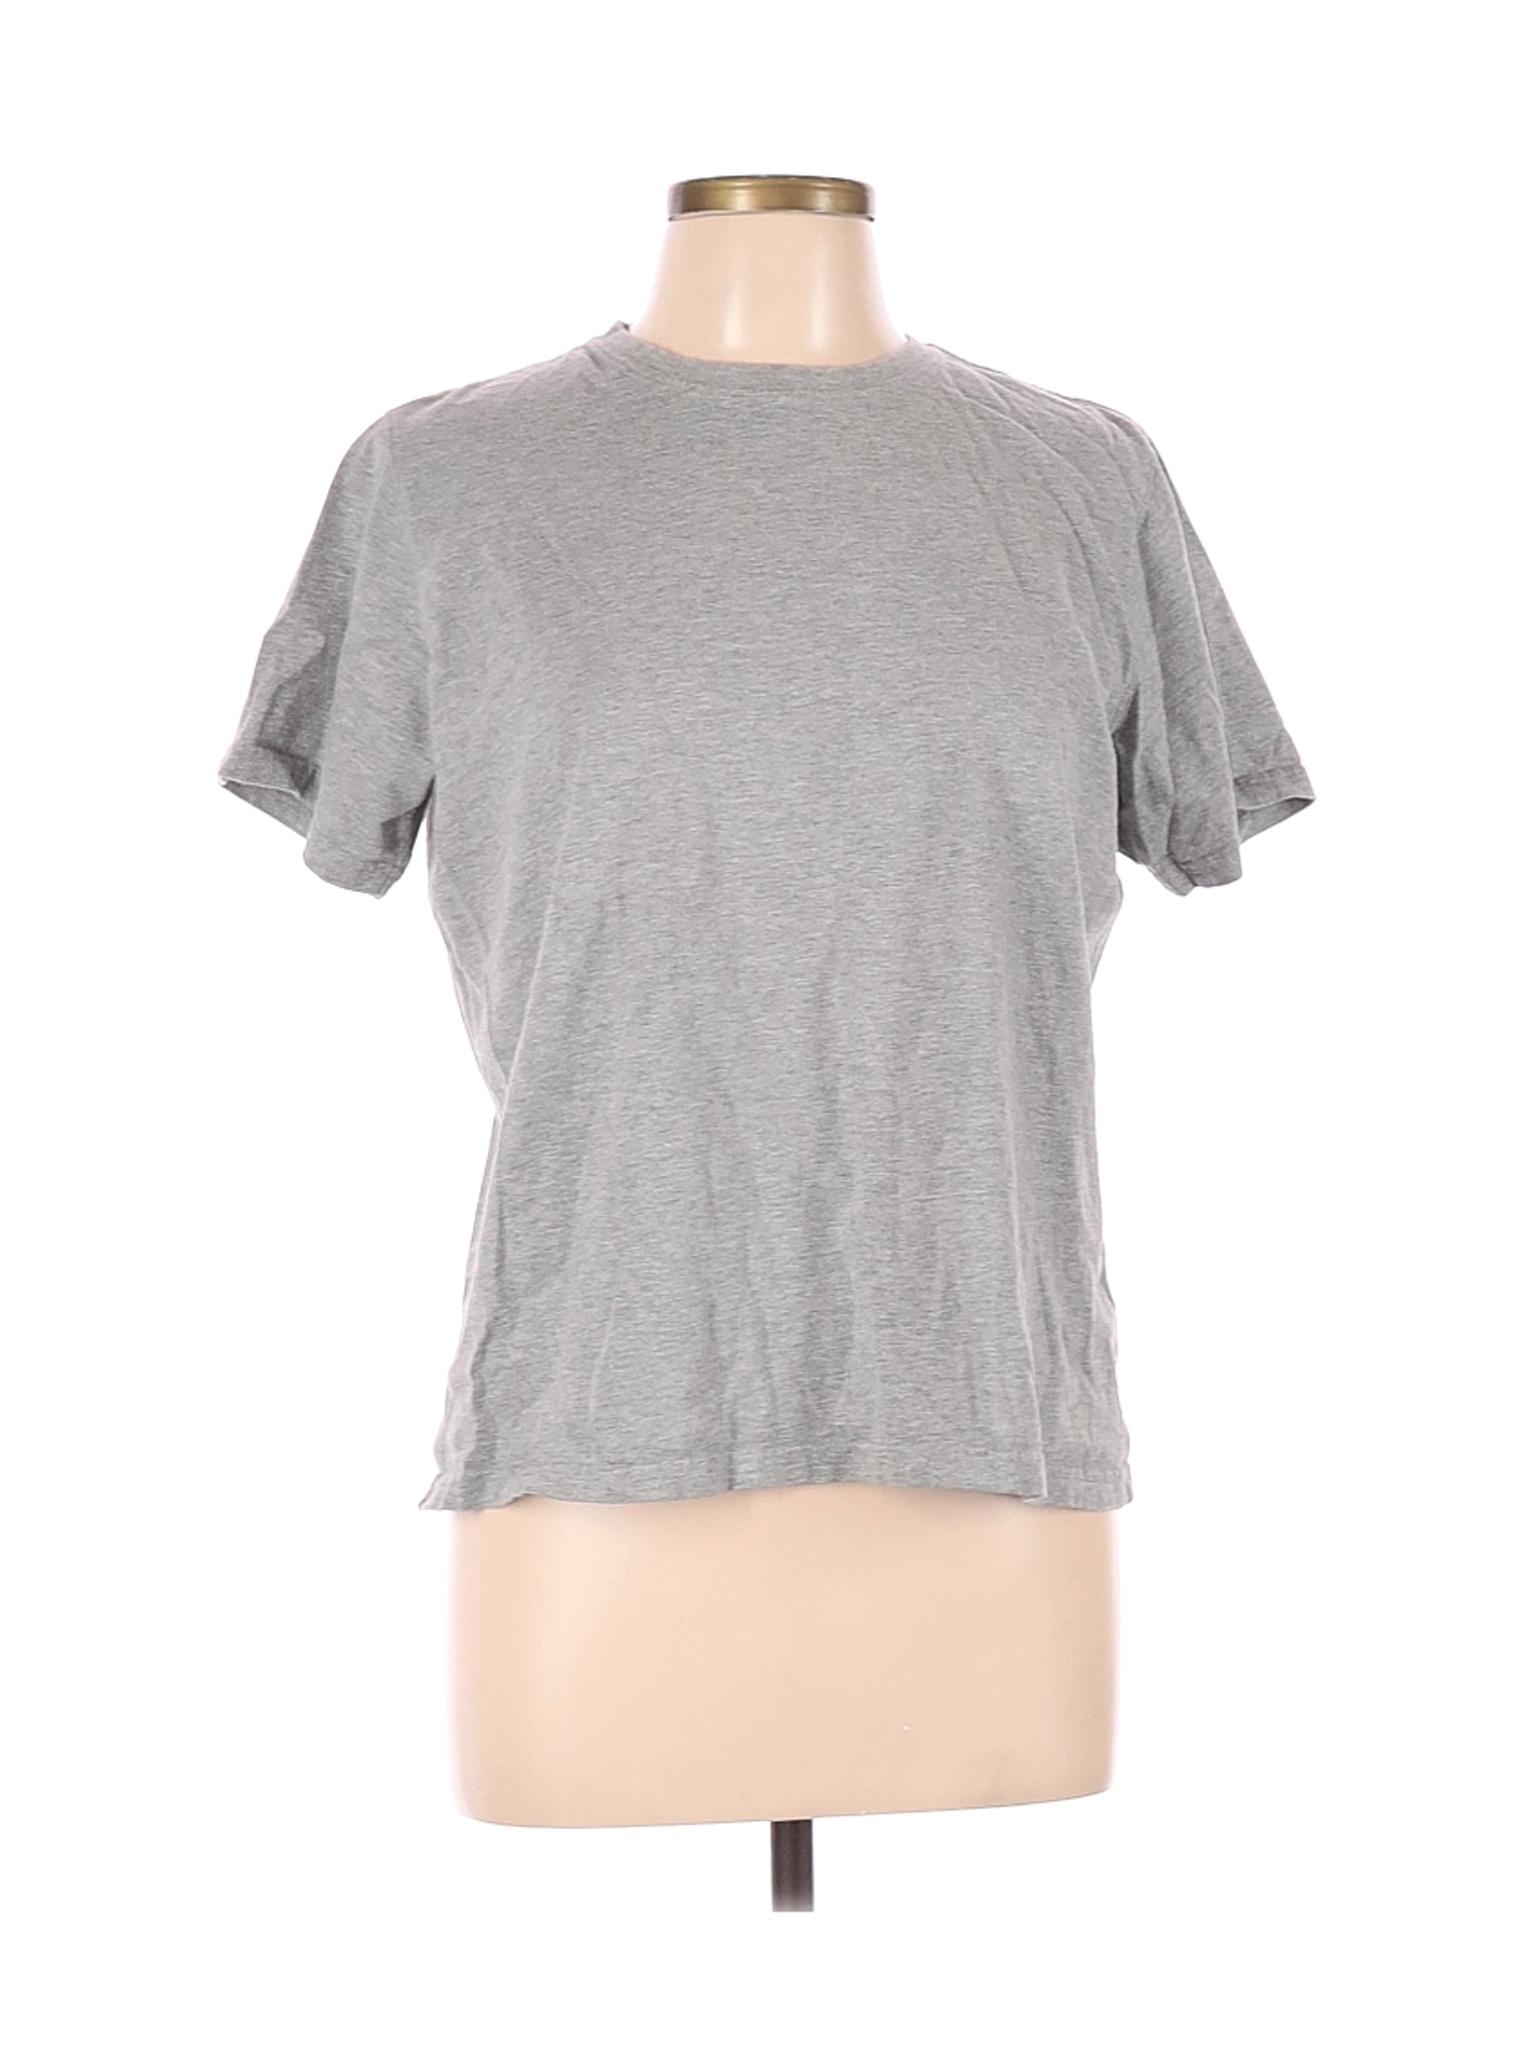 L.L.Bean Women Gray Short Sleeve T-Shirt M | eBay